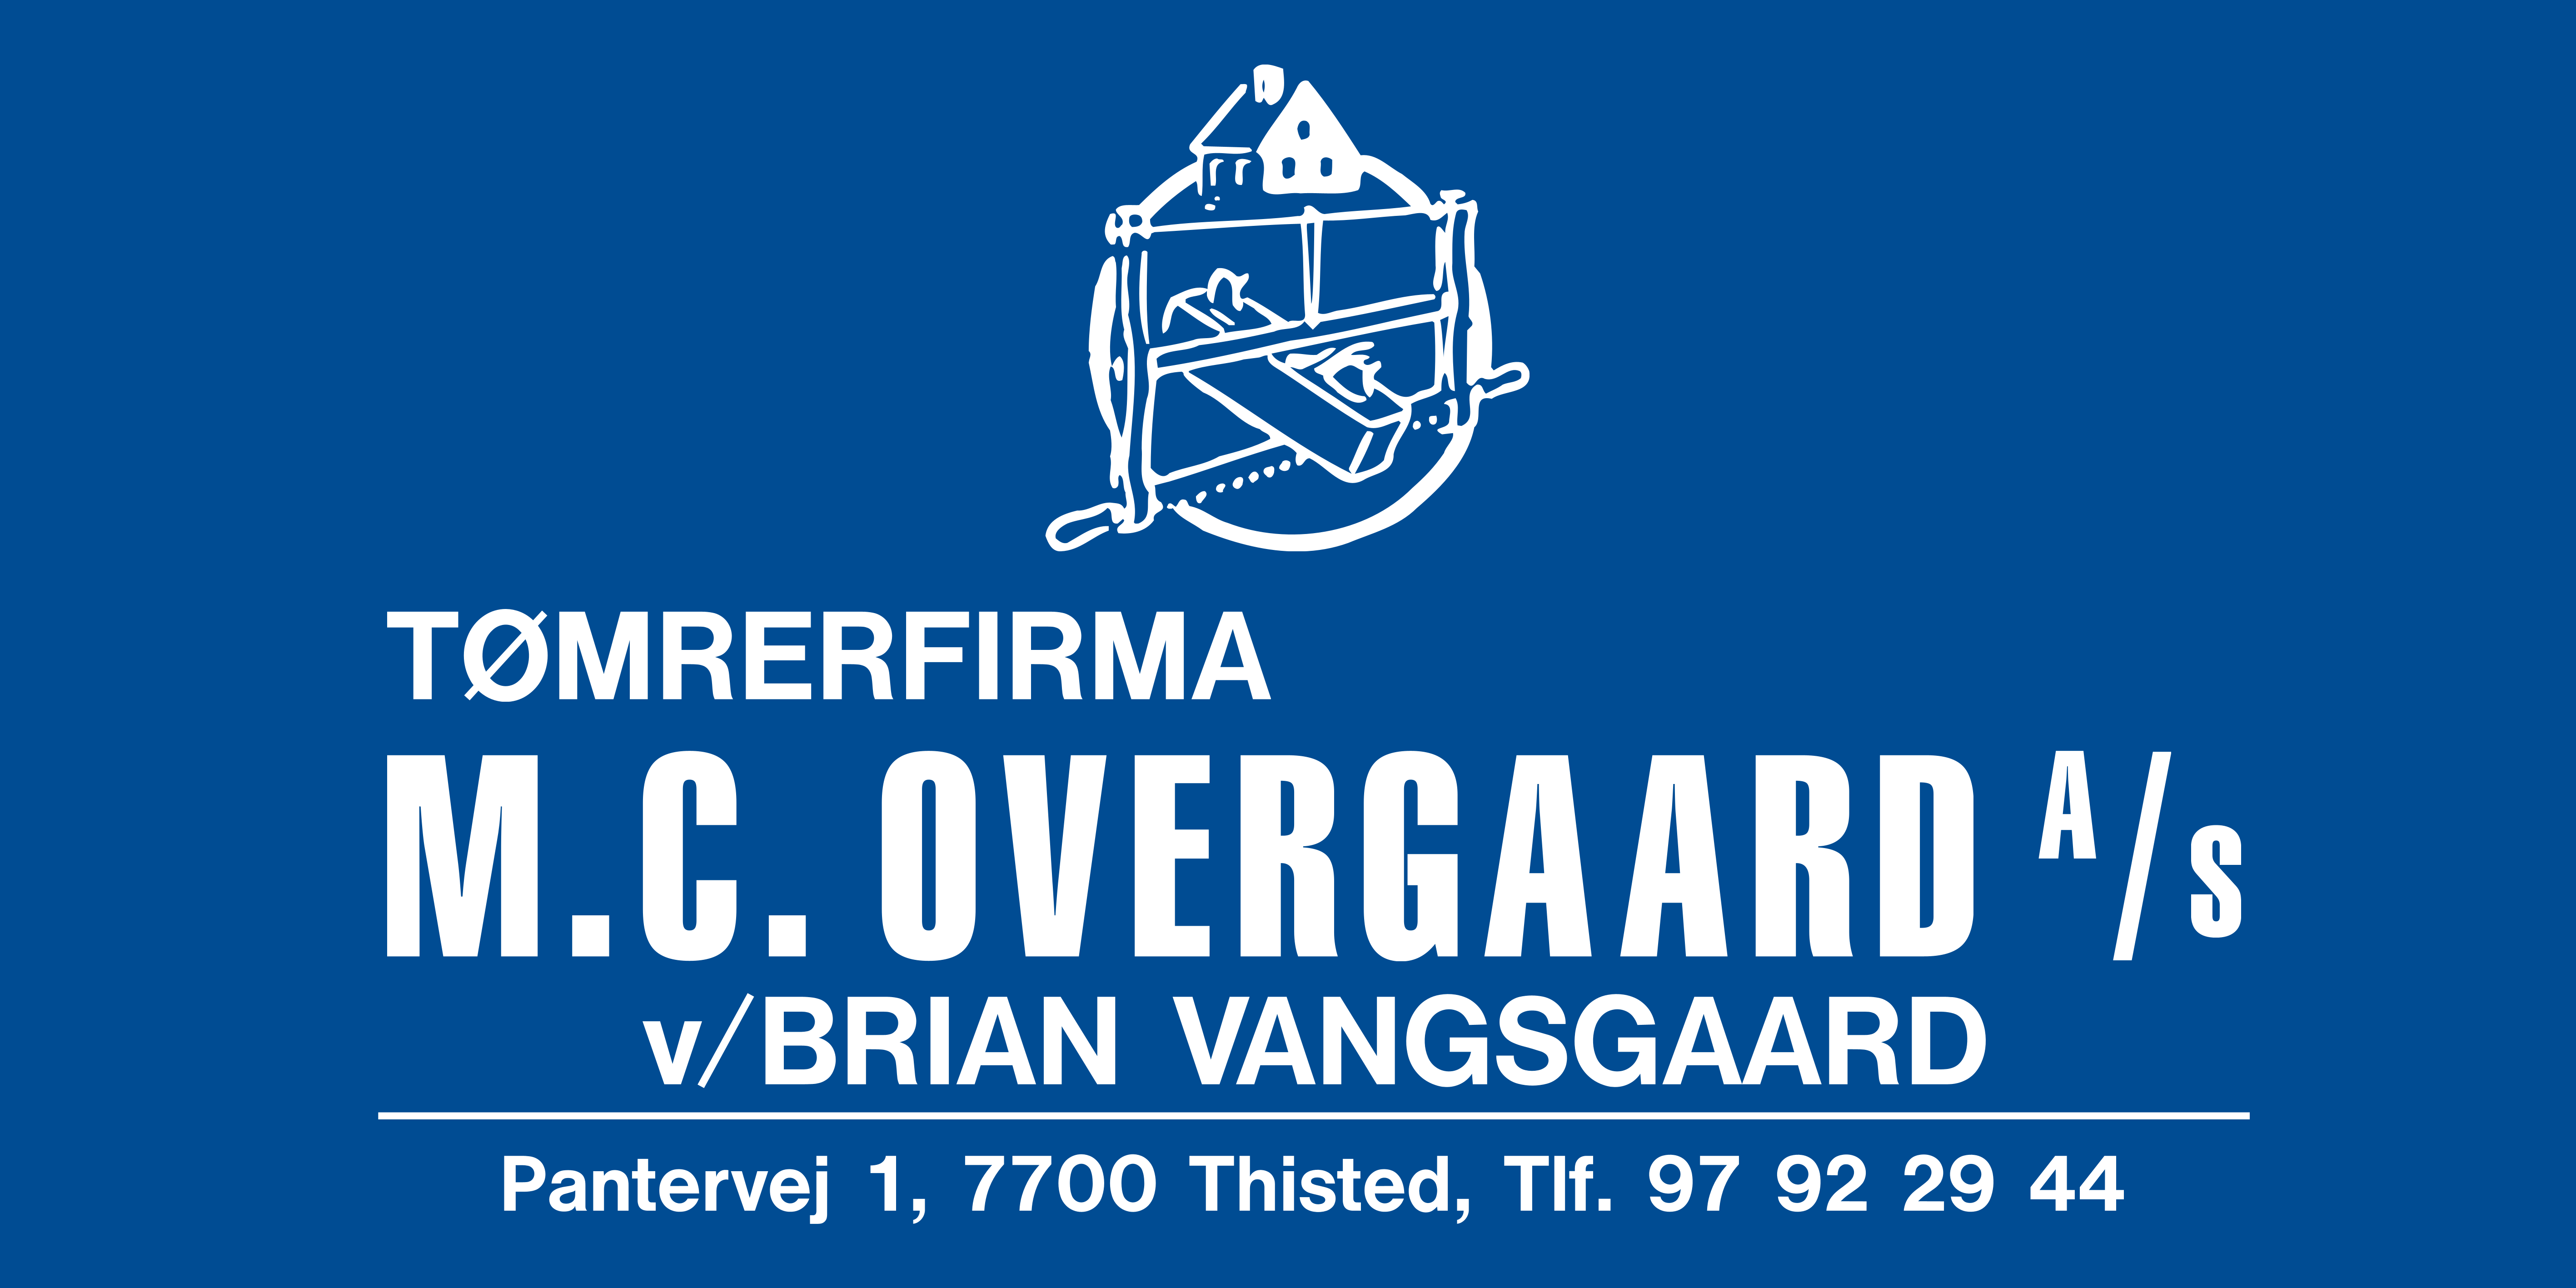 MC Overgaard